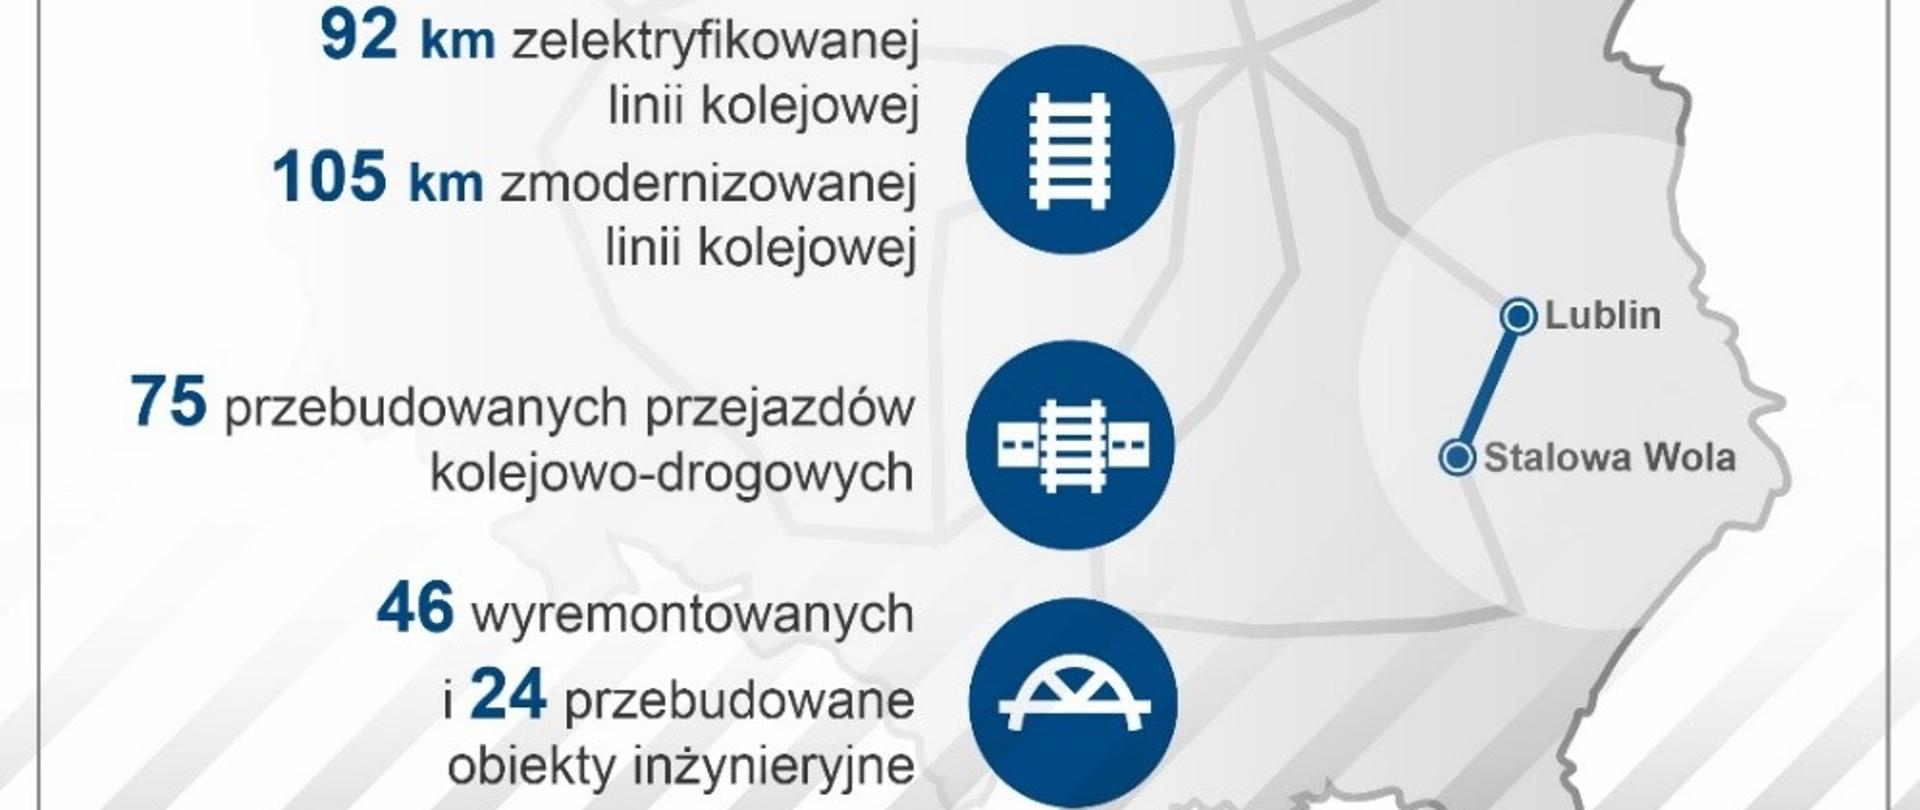 Modernizacja i elektryfikacja linii Lublin - Stalowa Wola Rozwadów